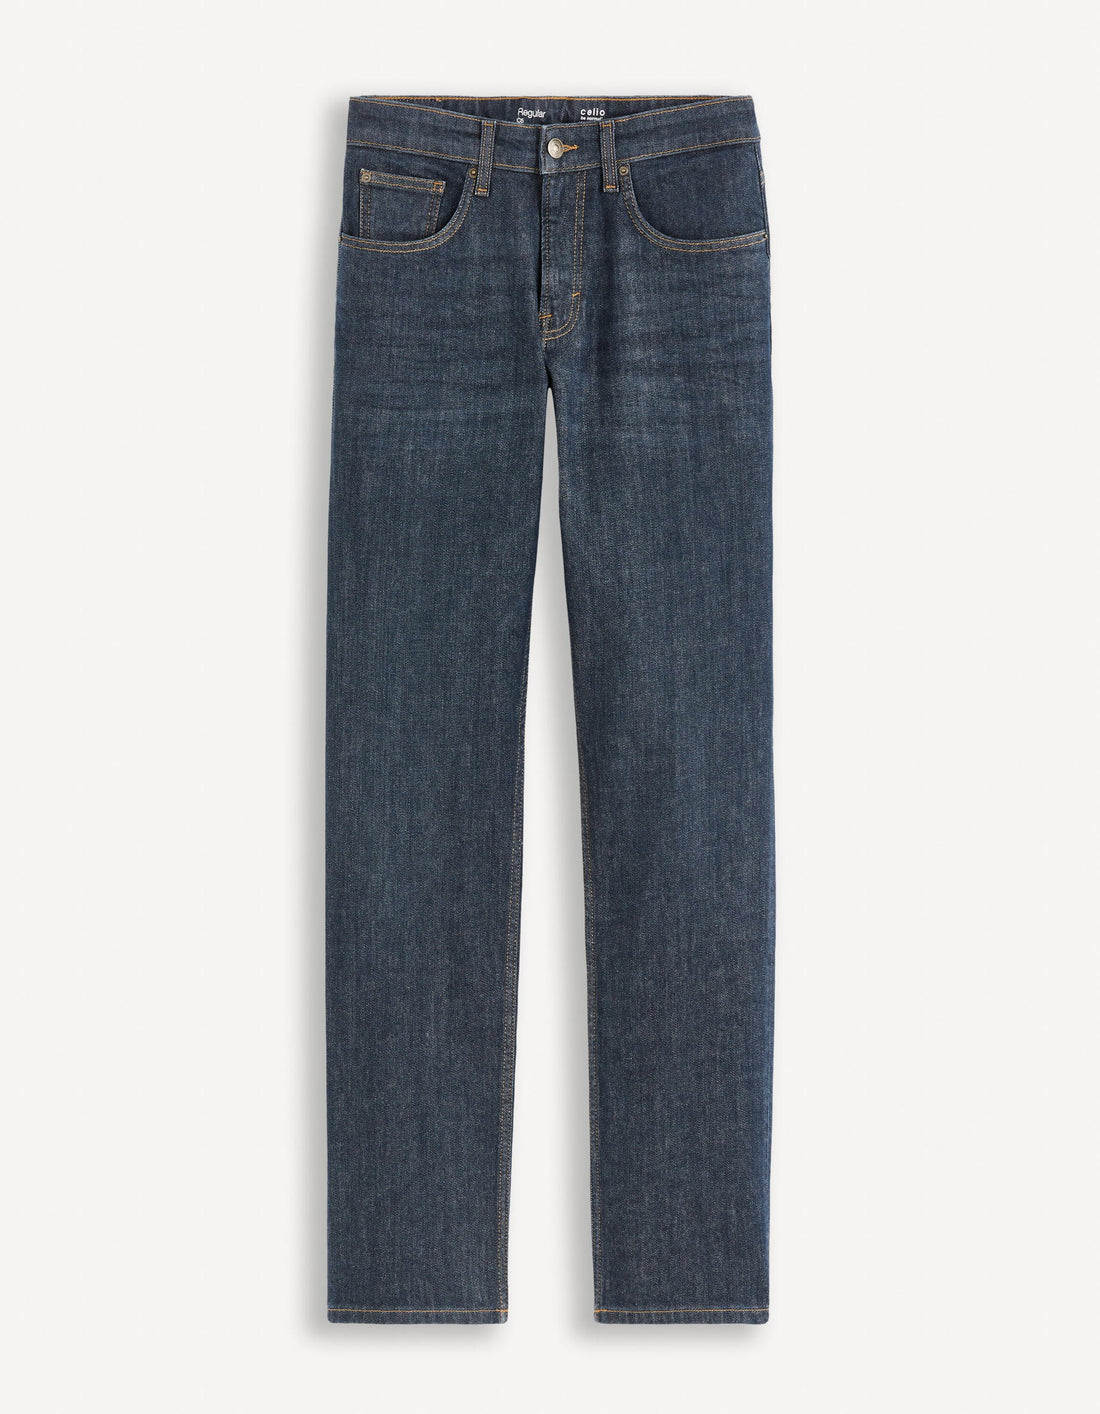 Regular C5 Stretch Jeans 3 Lengths_REGULAR3L_BRUT_01